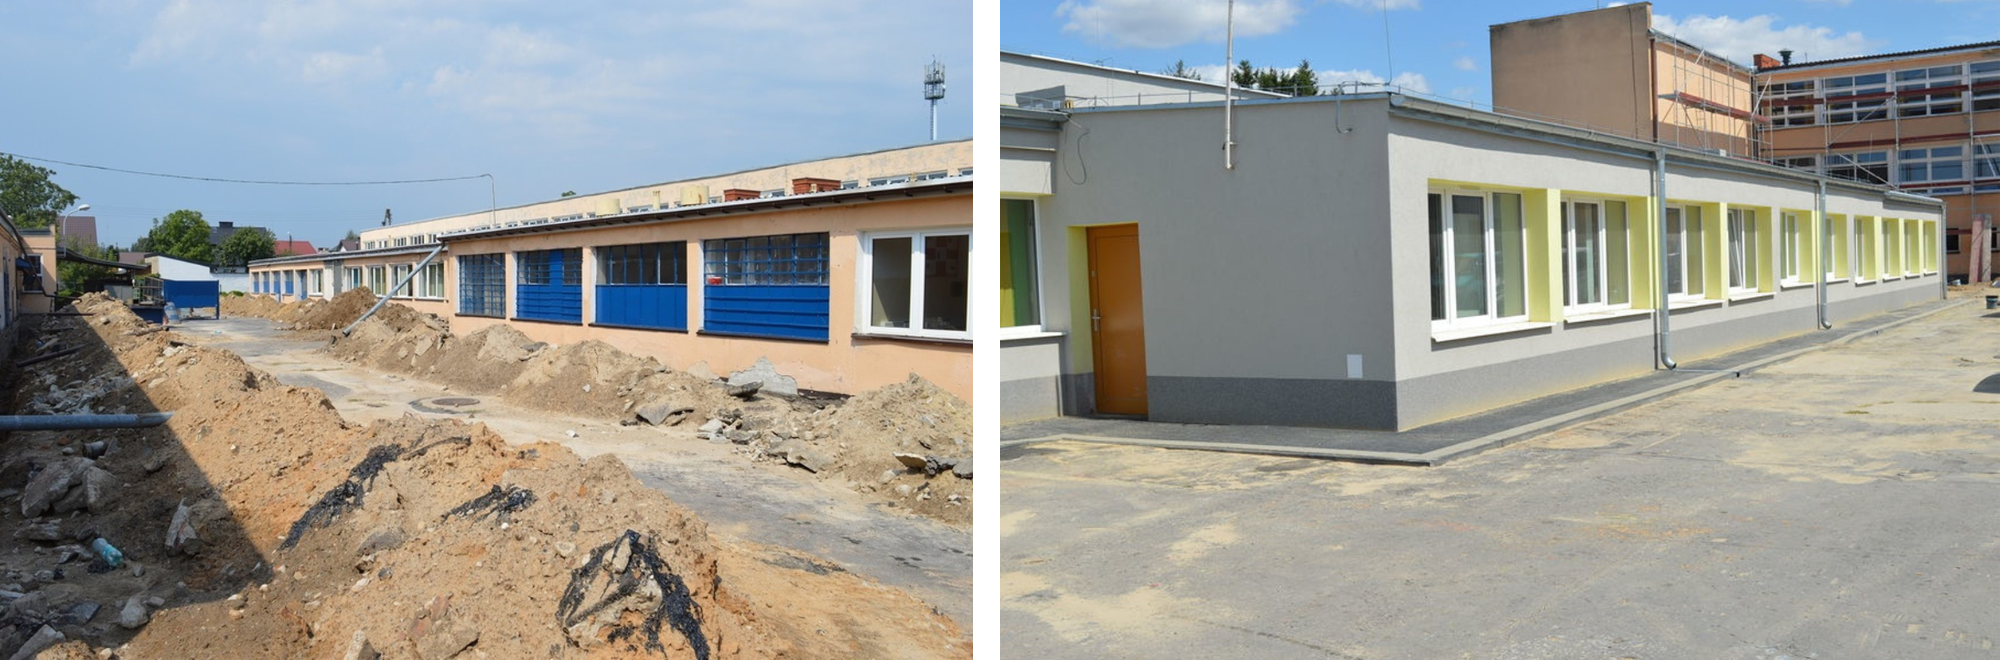 Zdjęcie 1: Budowa przy budynku szkolnym z widocznym wykopem i ziemią, niebieskie drzwi.
Zdjęcie 2: Odnowiony jednopiętrowy budynek szkolny z żółtymi akcentami i czystym podwórzem.